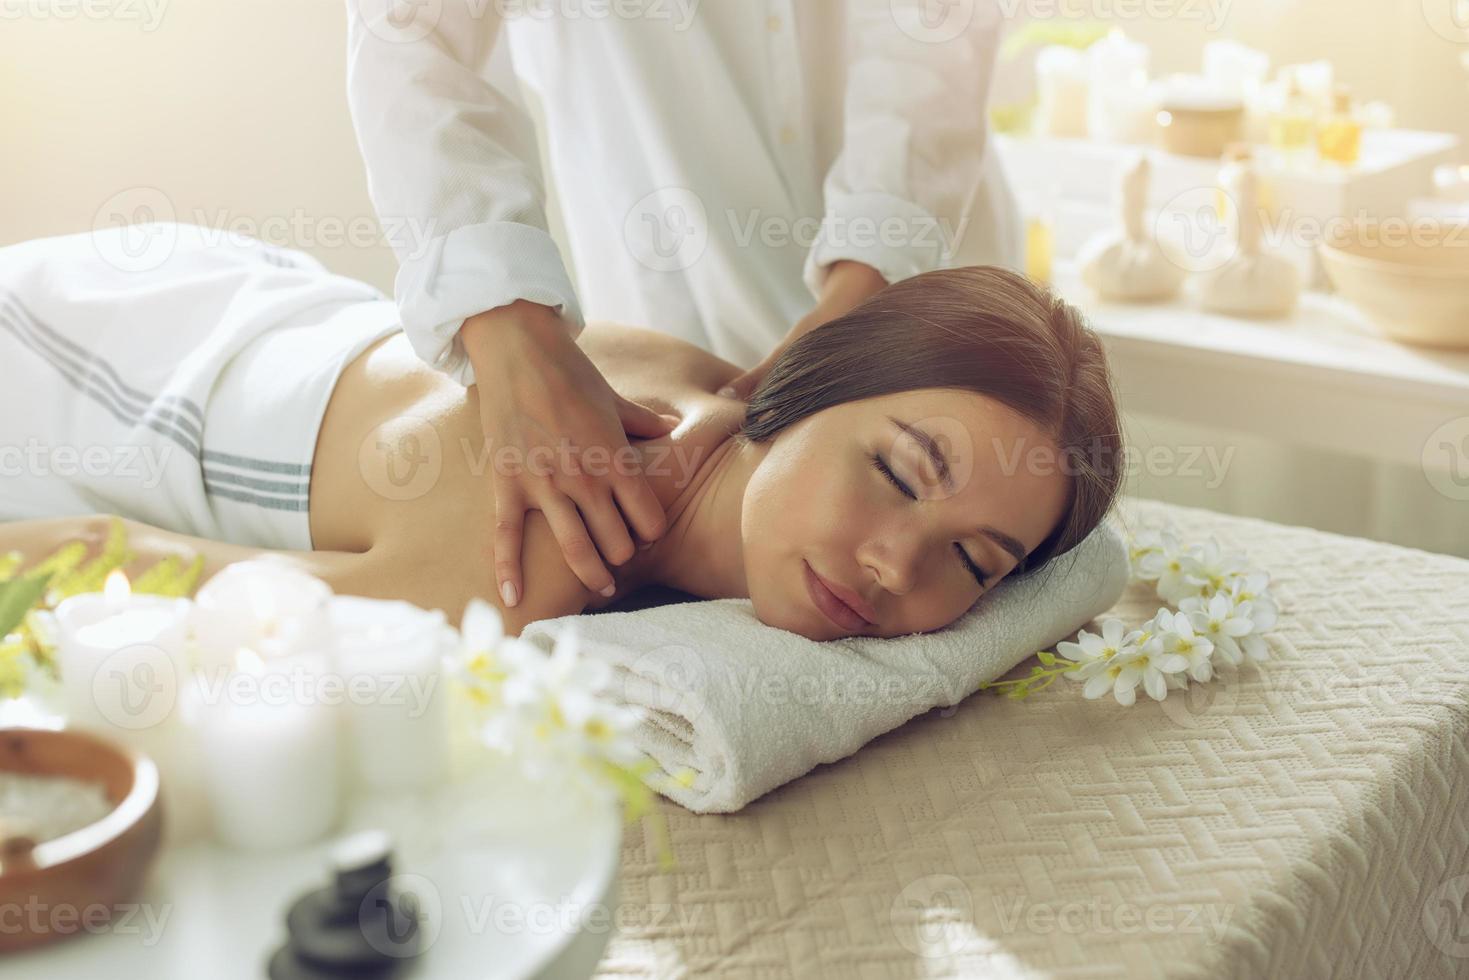 kvinna avkopplande med en massage i en spa Centrum foto